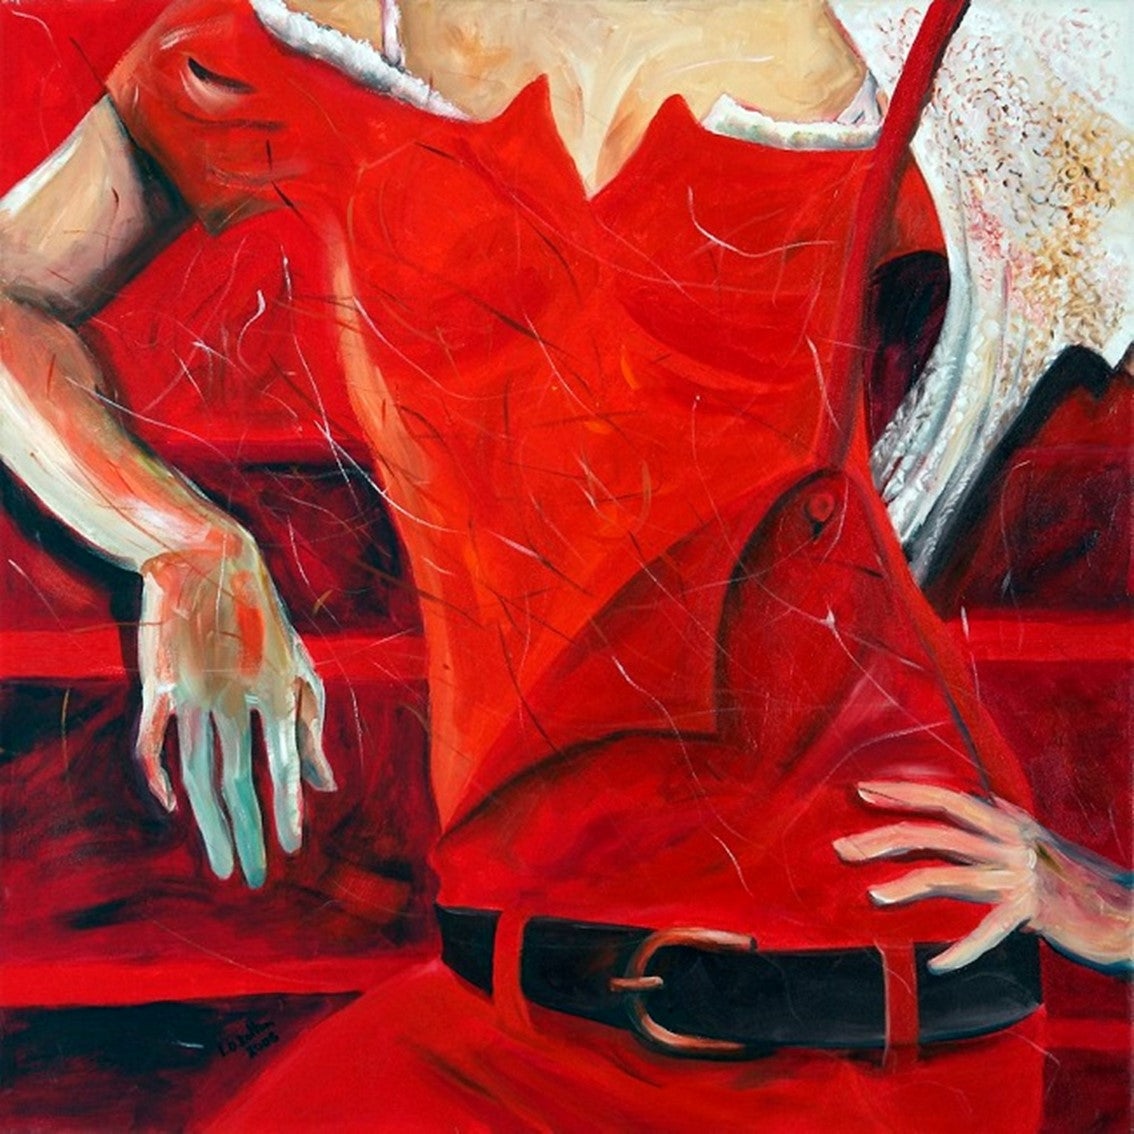 ליאורה קולטון | Liora Kolton, Acrylic on canvas, 100 by 100  cm